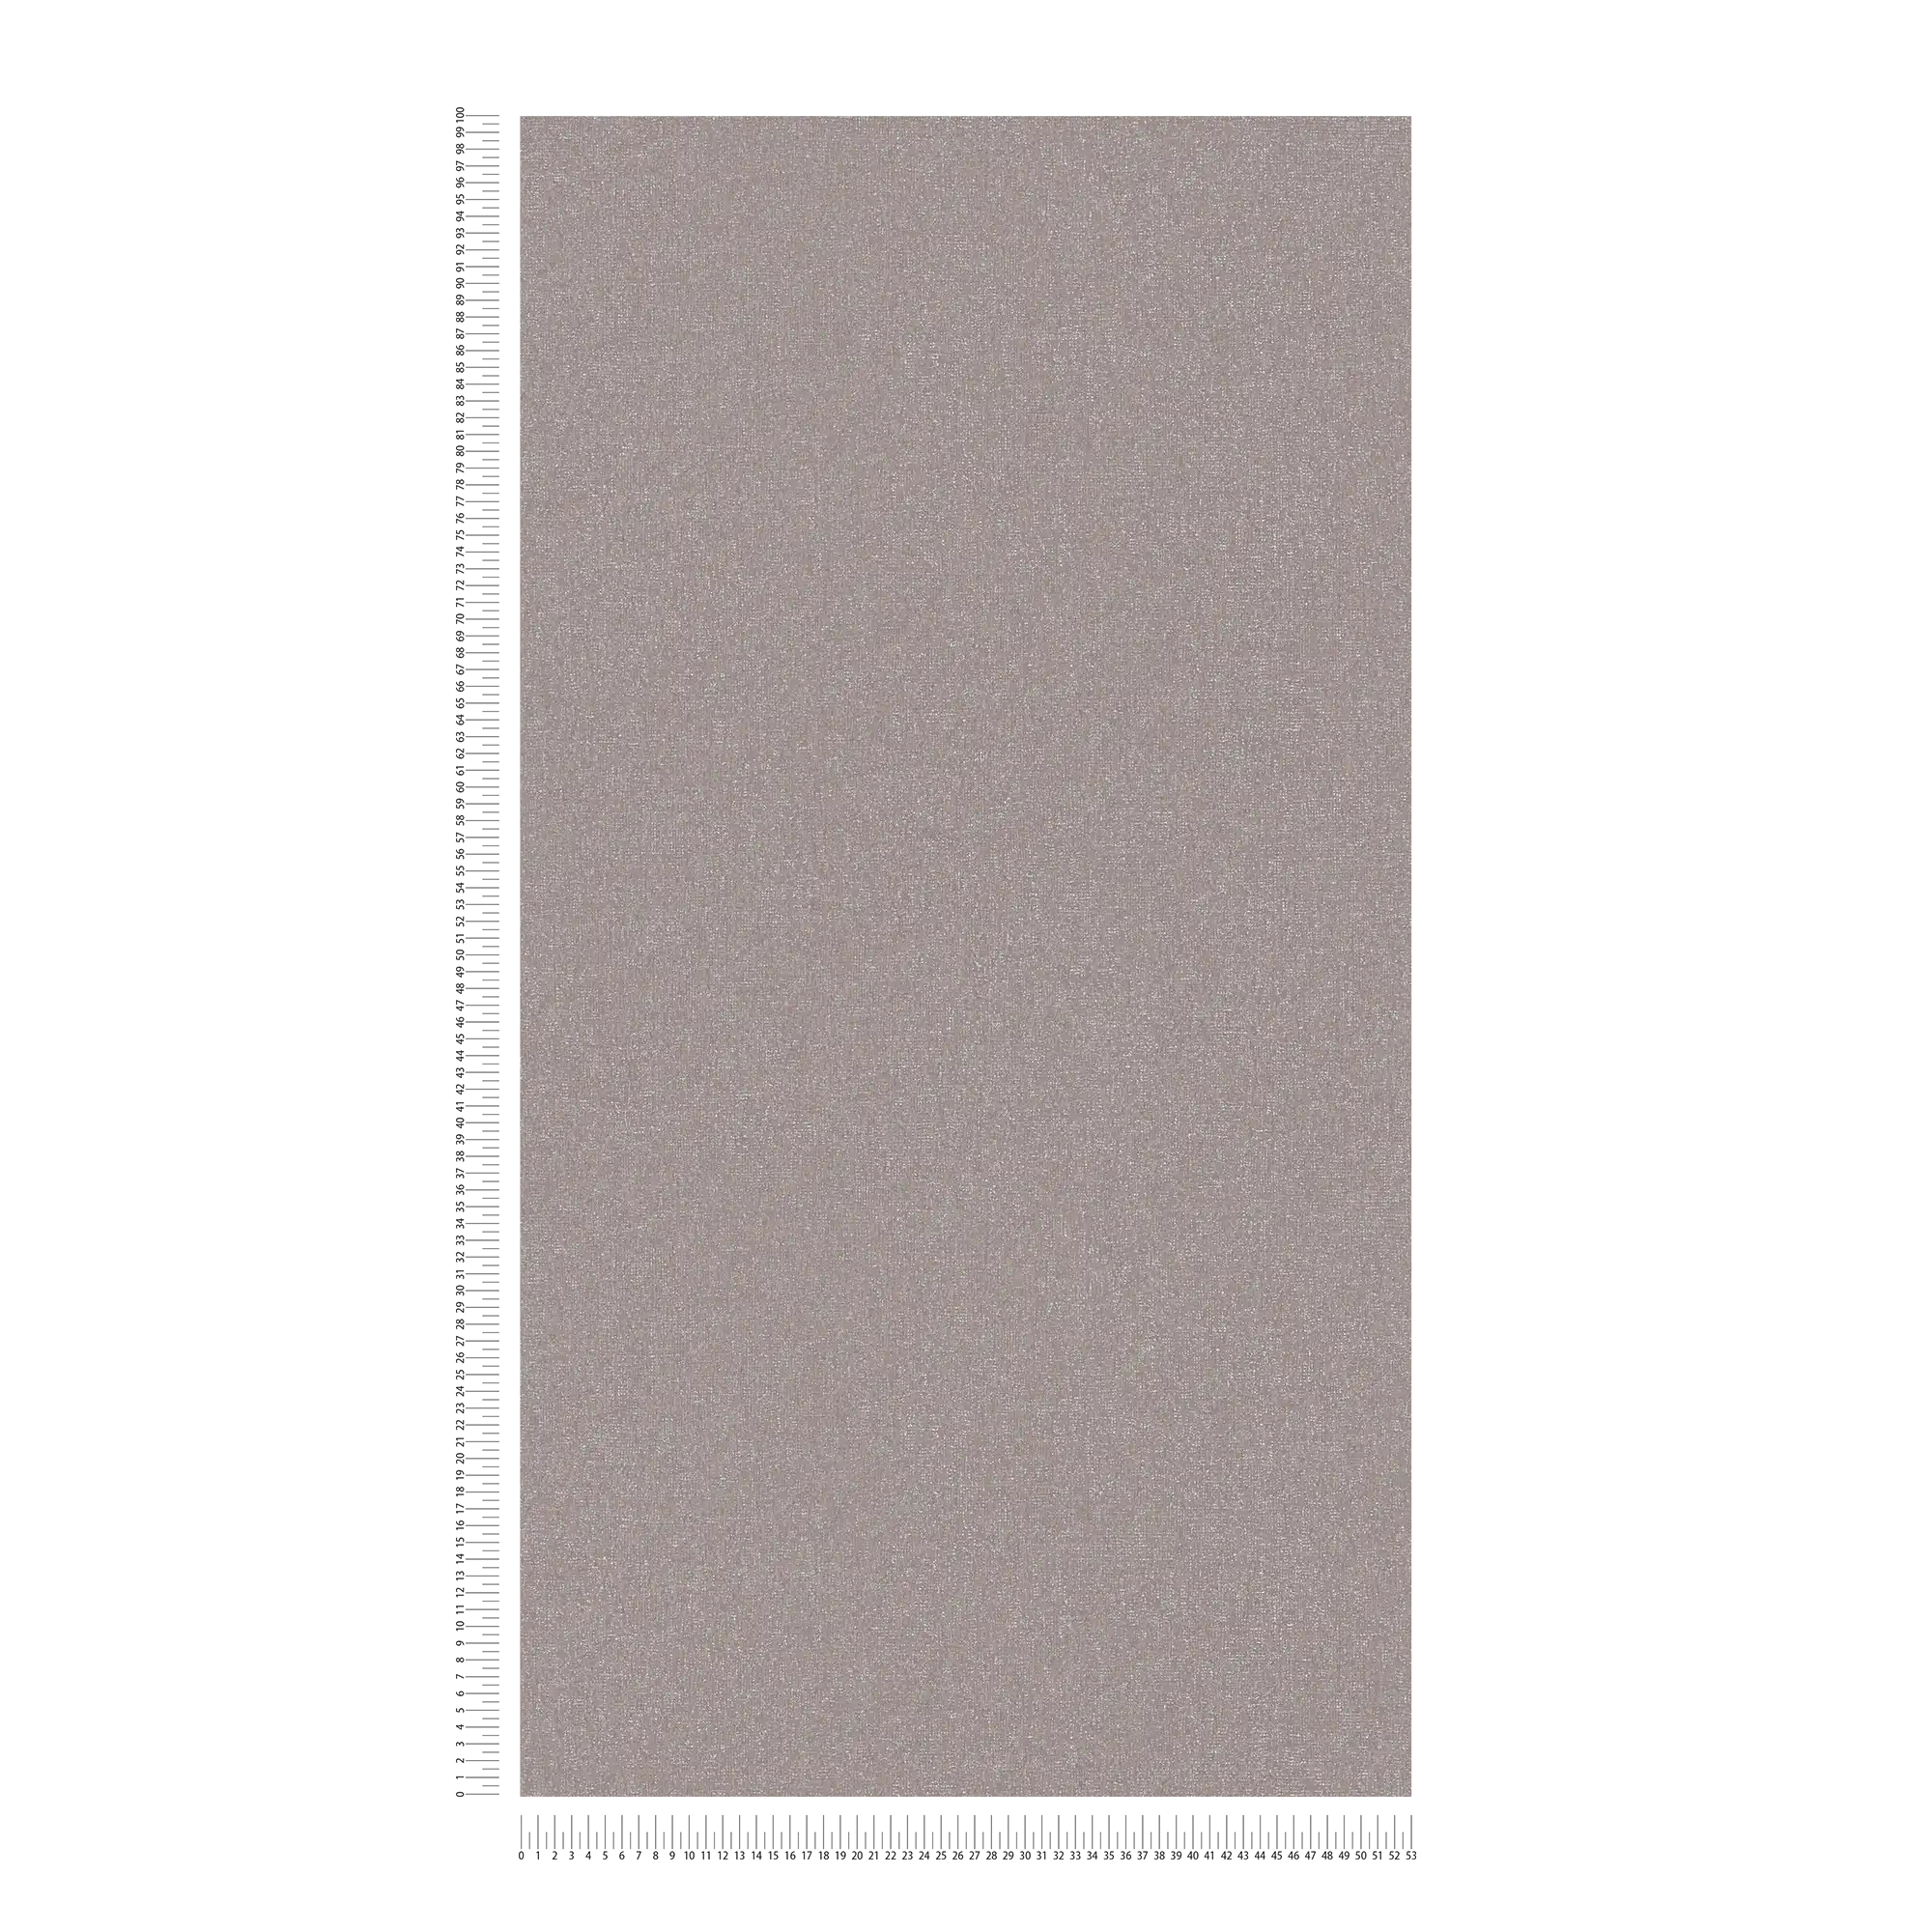             Papel pintado no tejido liso con estructura fina - gris, , marrón
        